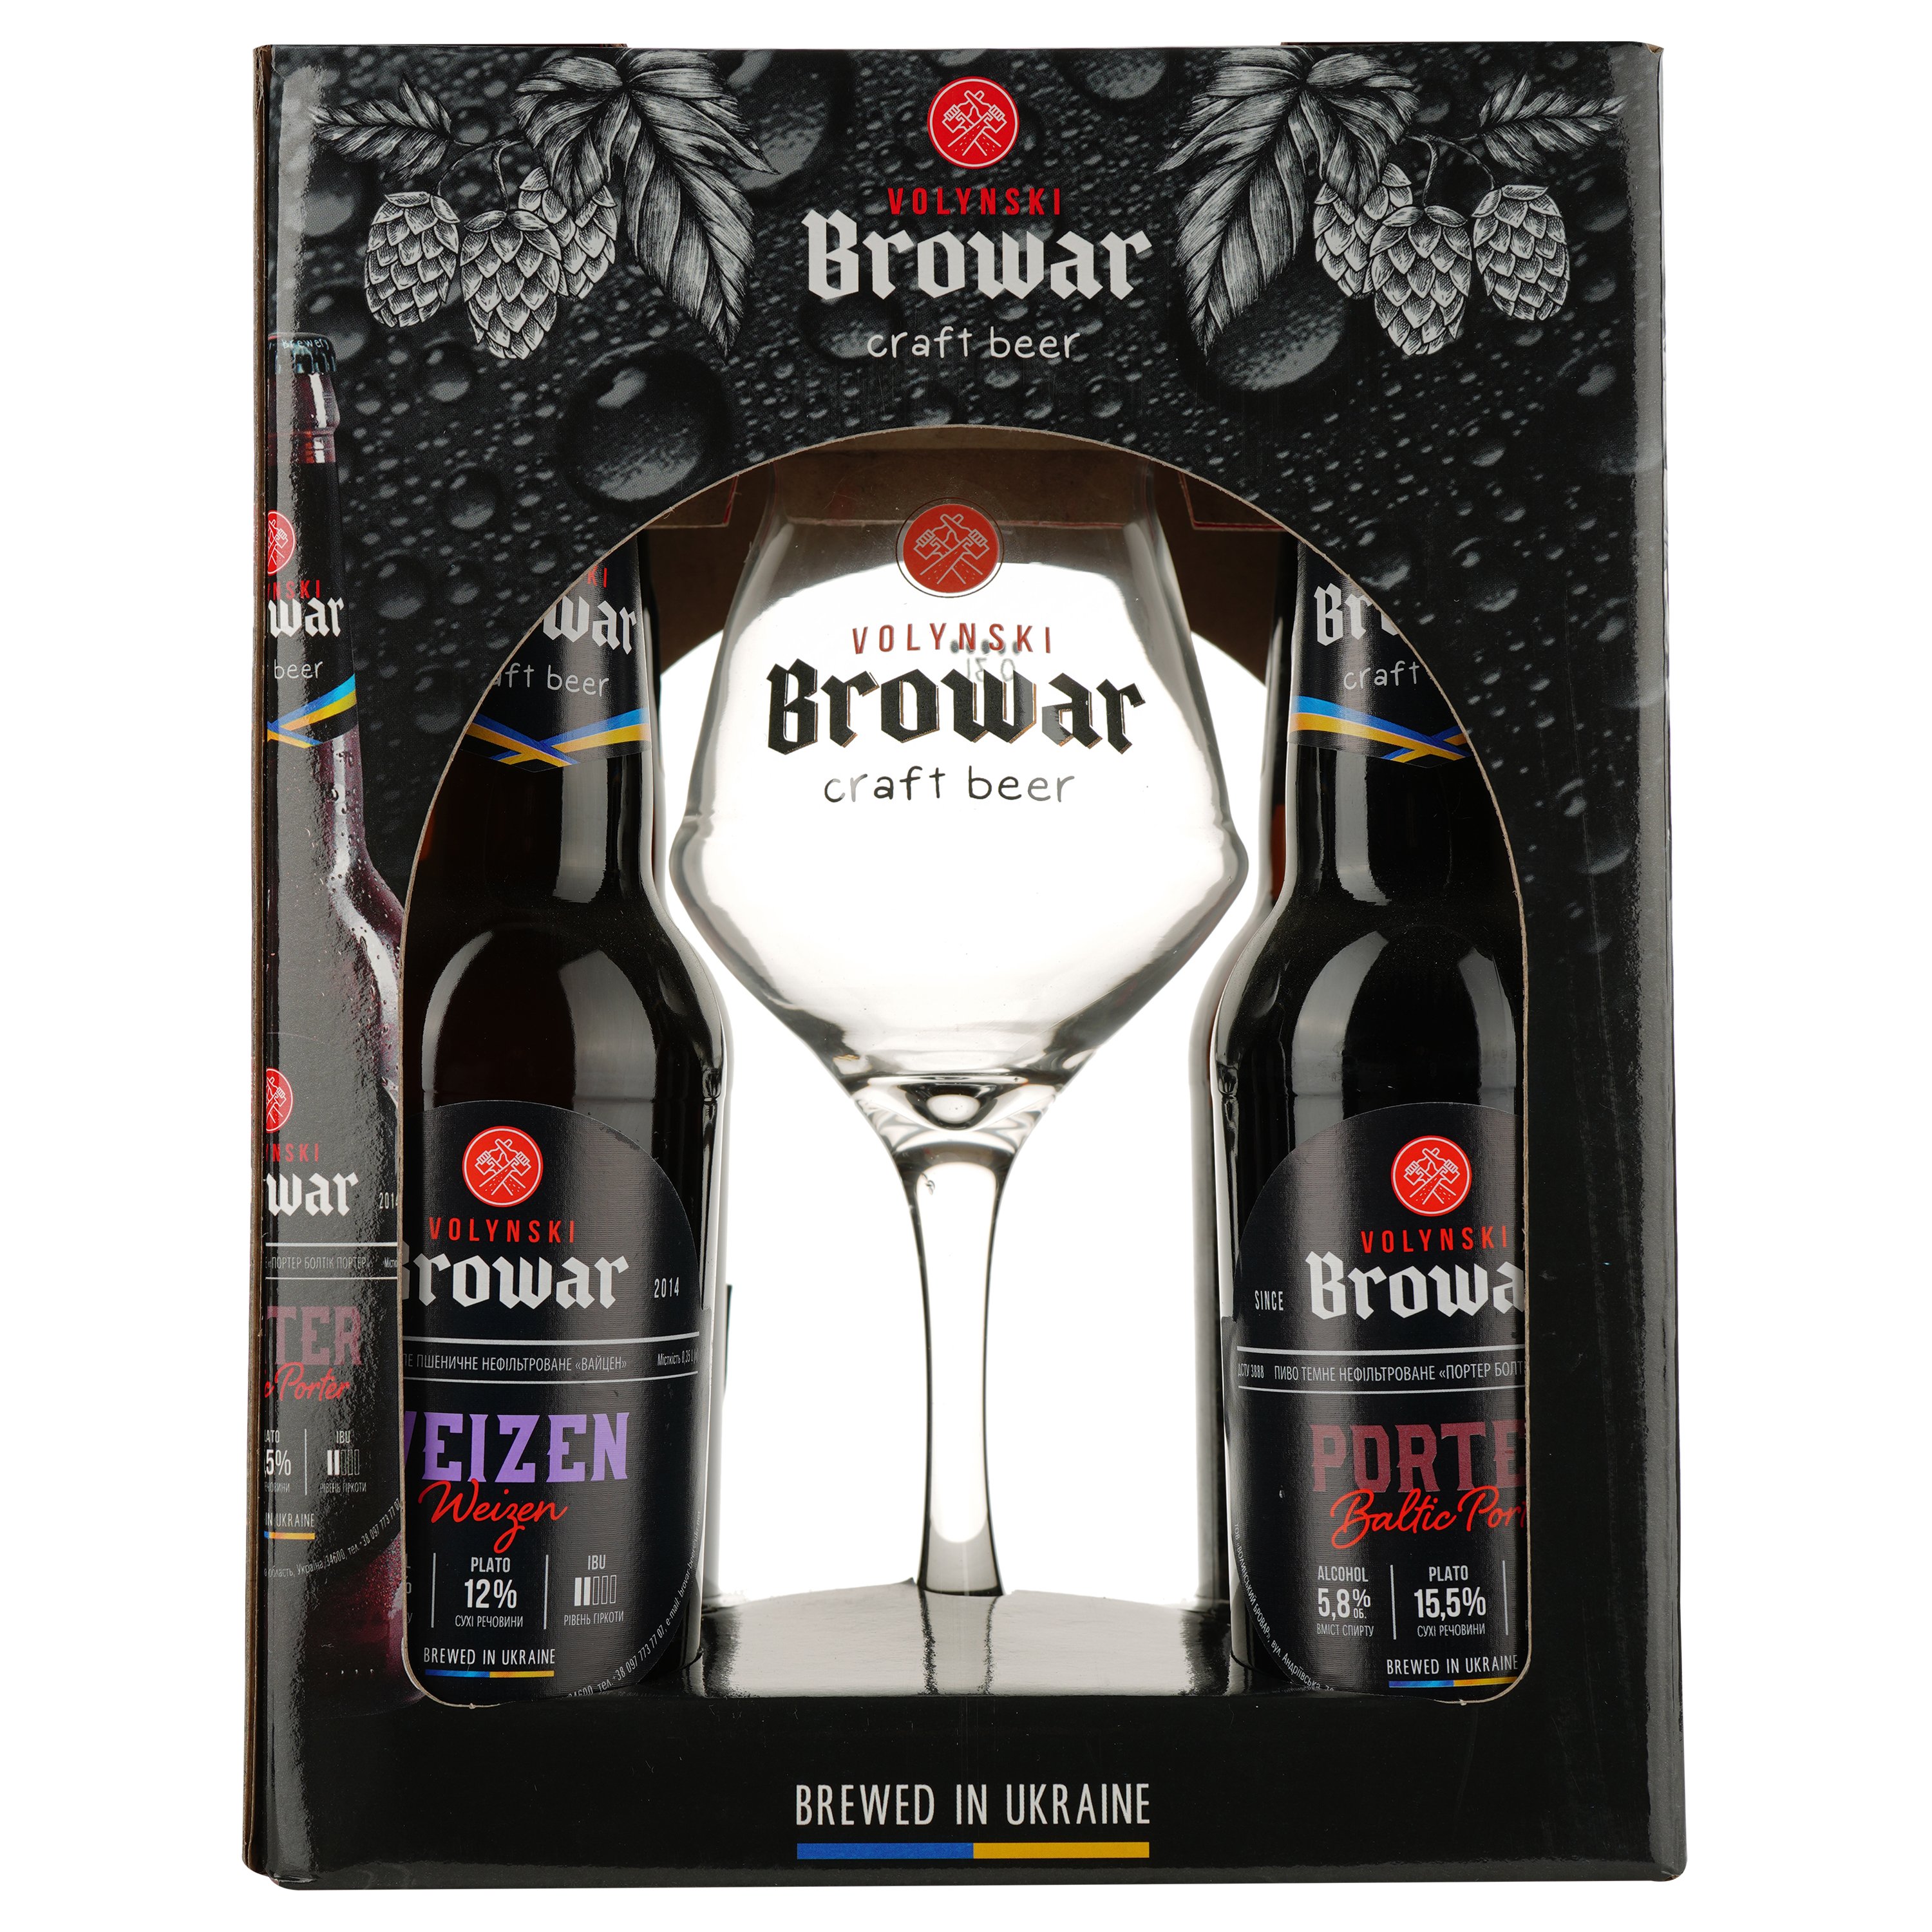 Подарунковий набір пива Volynski Browar, 3,8-5,8%, 1,4 л (4 шт. по 0,35 л) + Келих Somelier, 0,4 л - фото 1